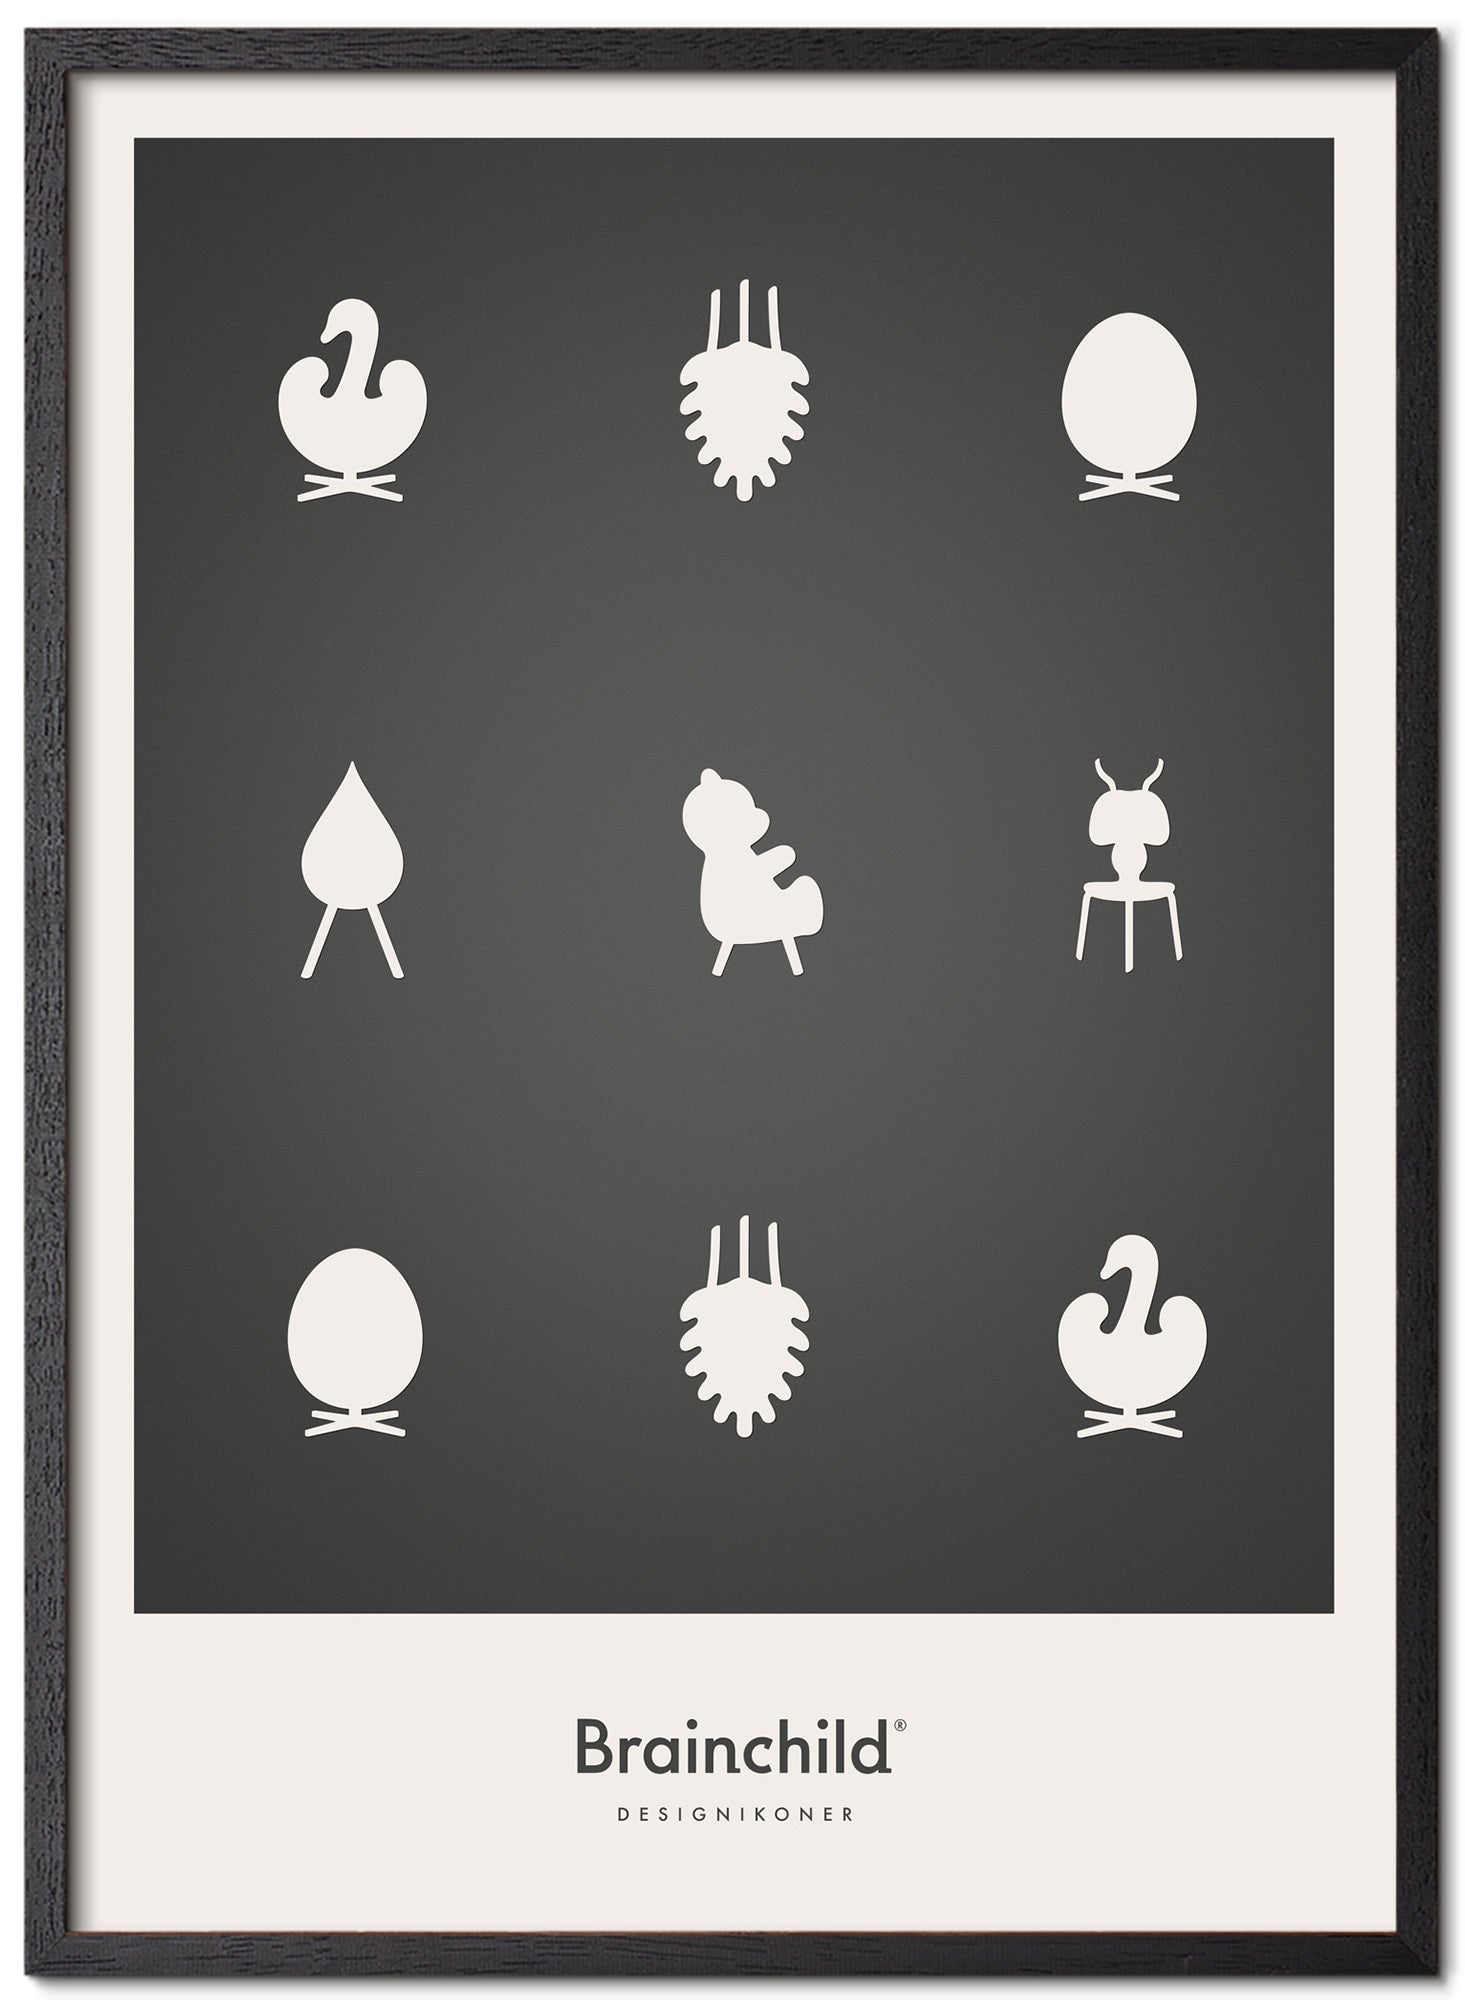 Icone di design di un'idea di dignamento telaio poster in legno laccato nero 30x40 cm, grigio chiaro